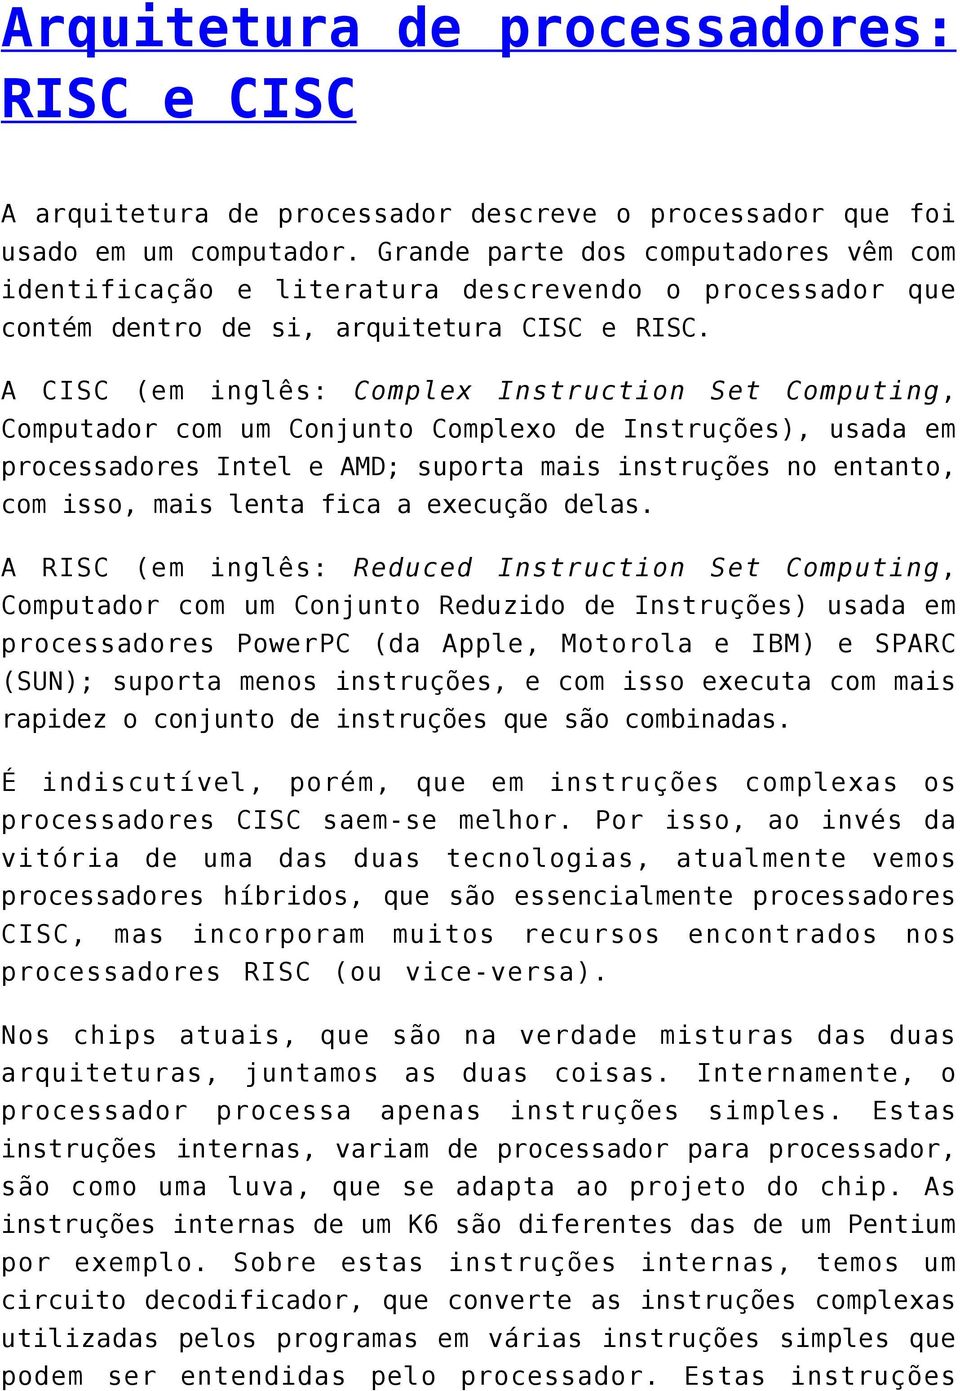 A CISC (em inglês: Complex Instruction Set Computing, Computador com um Conjunto Complexo de Instruções), usada em processadores Intel e AMD; suporta mais instruções no entanto, com isso, mais lenta